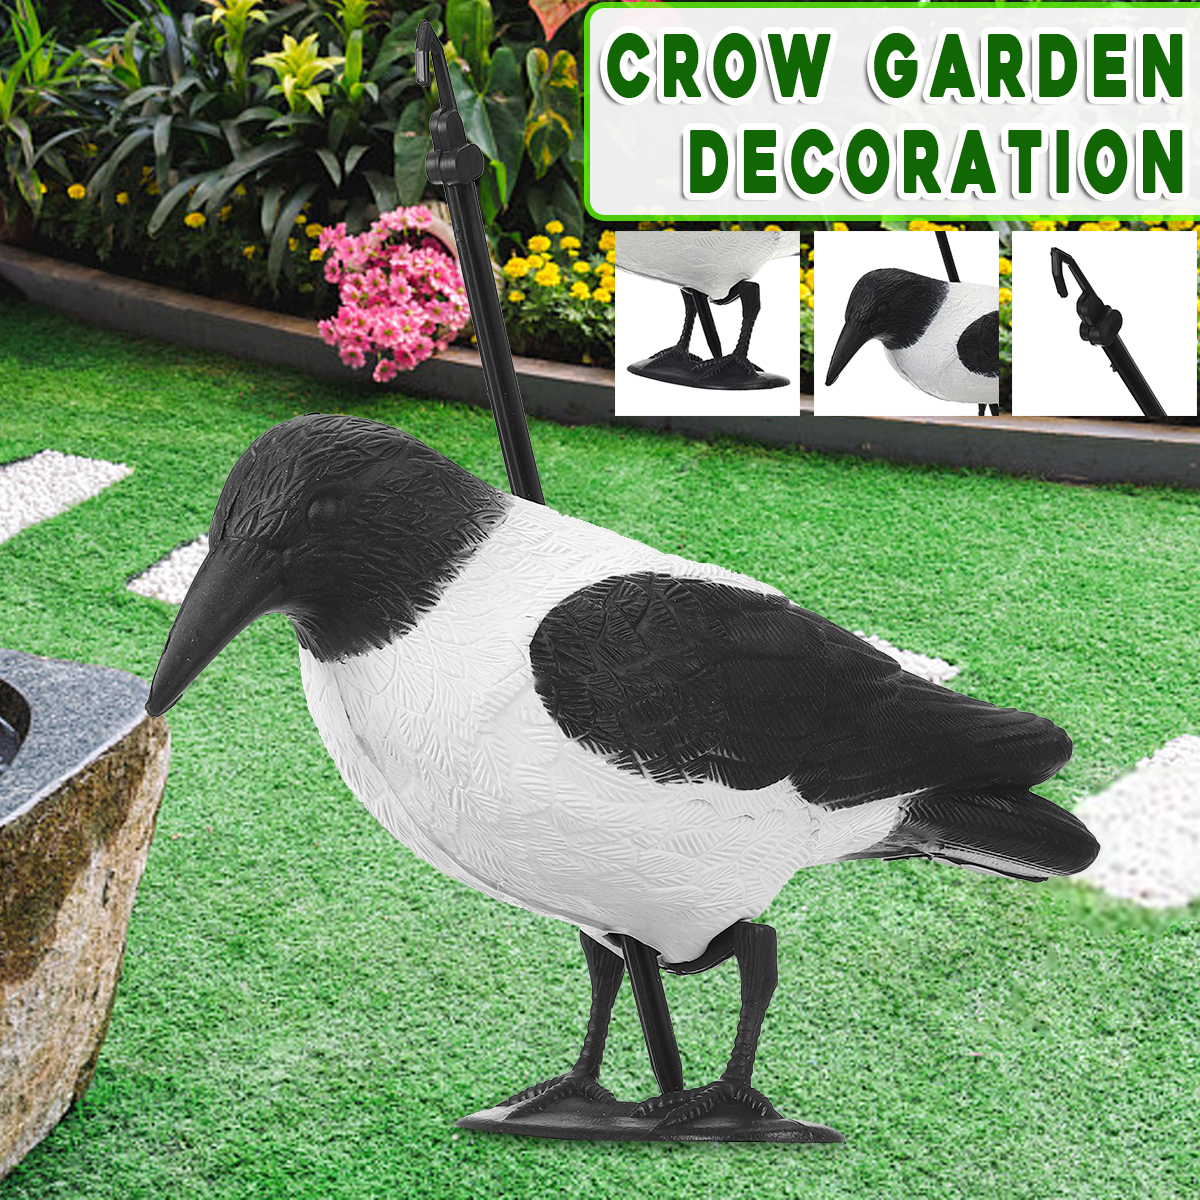 Crow-Hunting-Decoy-Bird-Deterrent-Scarer-Outdoor-Garden-Hunting-Equipment-1556629-3